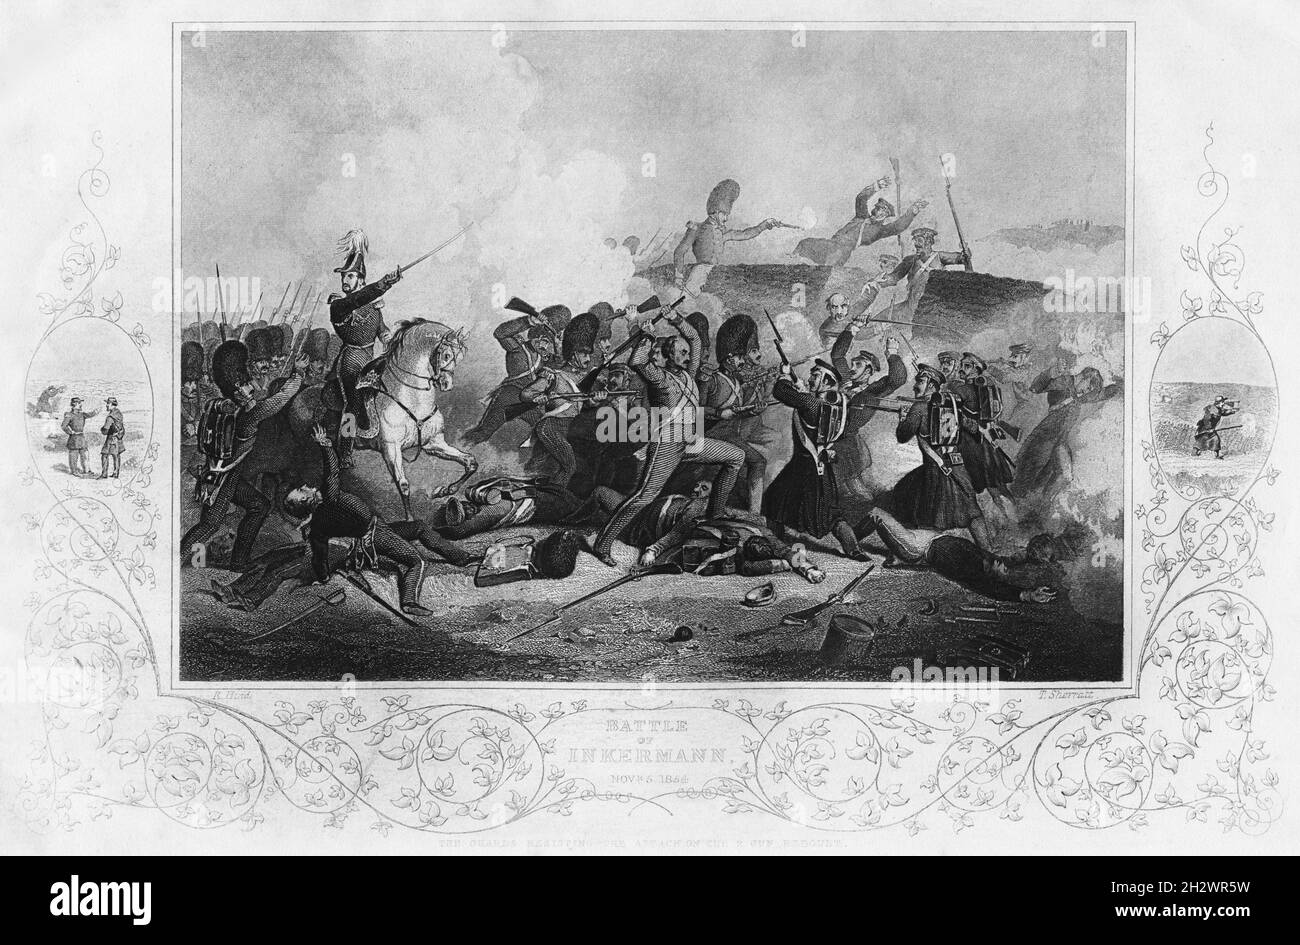 La huella de la antigua guerra de Crimea titulada “Batalla de INKERMANN – 5 de noviembre de 1854”, que representa “Los guardias resisten el ataque contra el reducto de armas de 2”. Grabado por T. Sherratt de una obra de arte original de R. Hind. Foto de stock